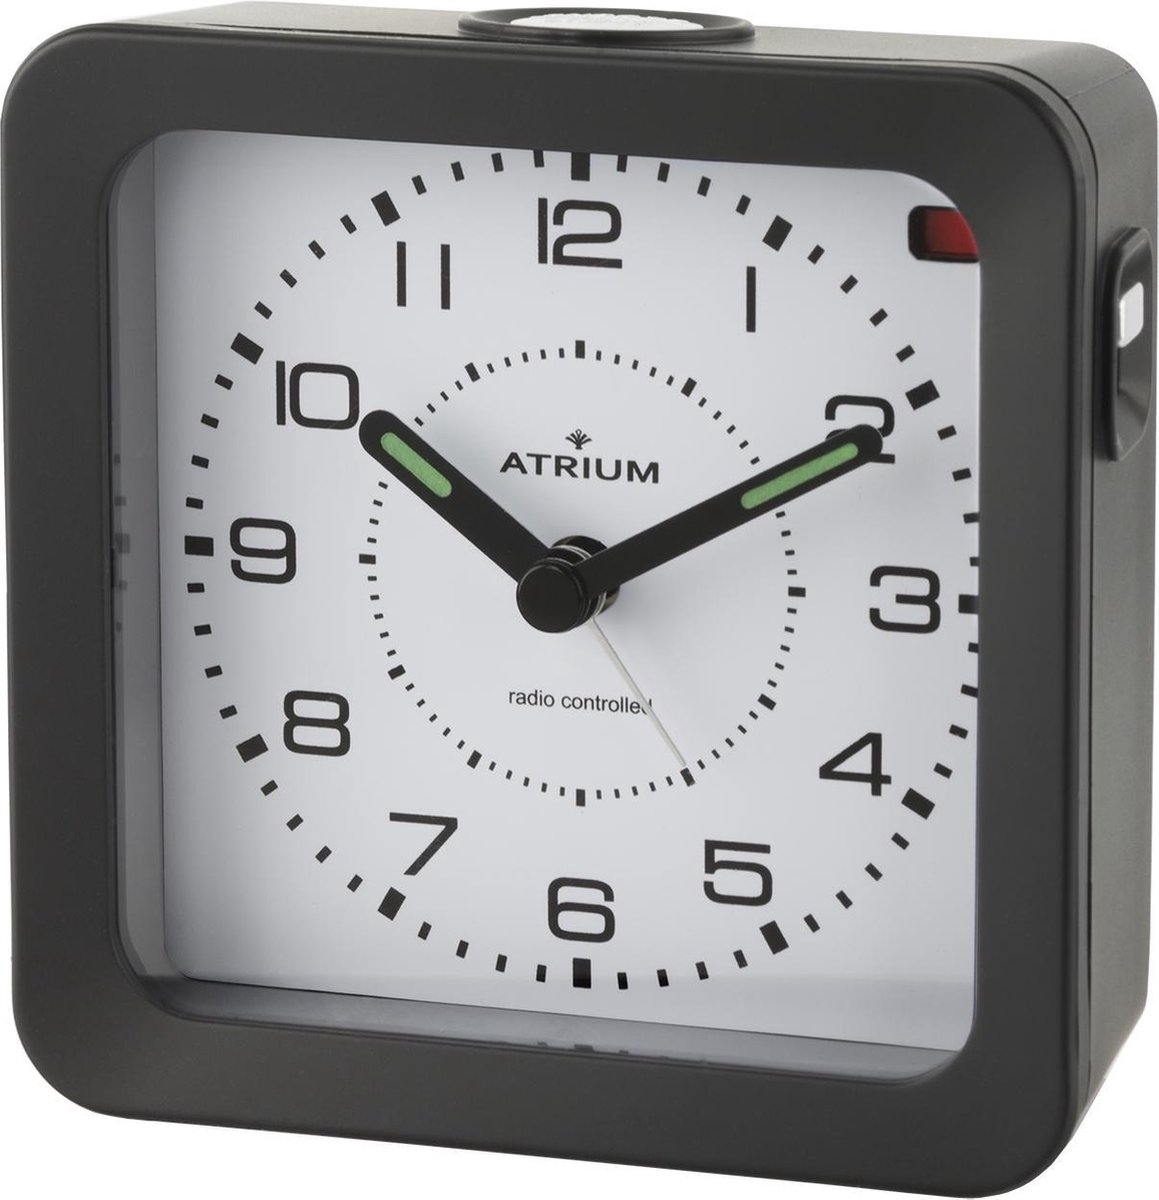 ATRIUM Wekker - Analoog - Radiogestuurd - Alarm - Zwart - Licht - Verlichte wijzers - Opbouwend Alarmsignaal - Snooze - Duidelijk - Quartz uurwerk - A660-7